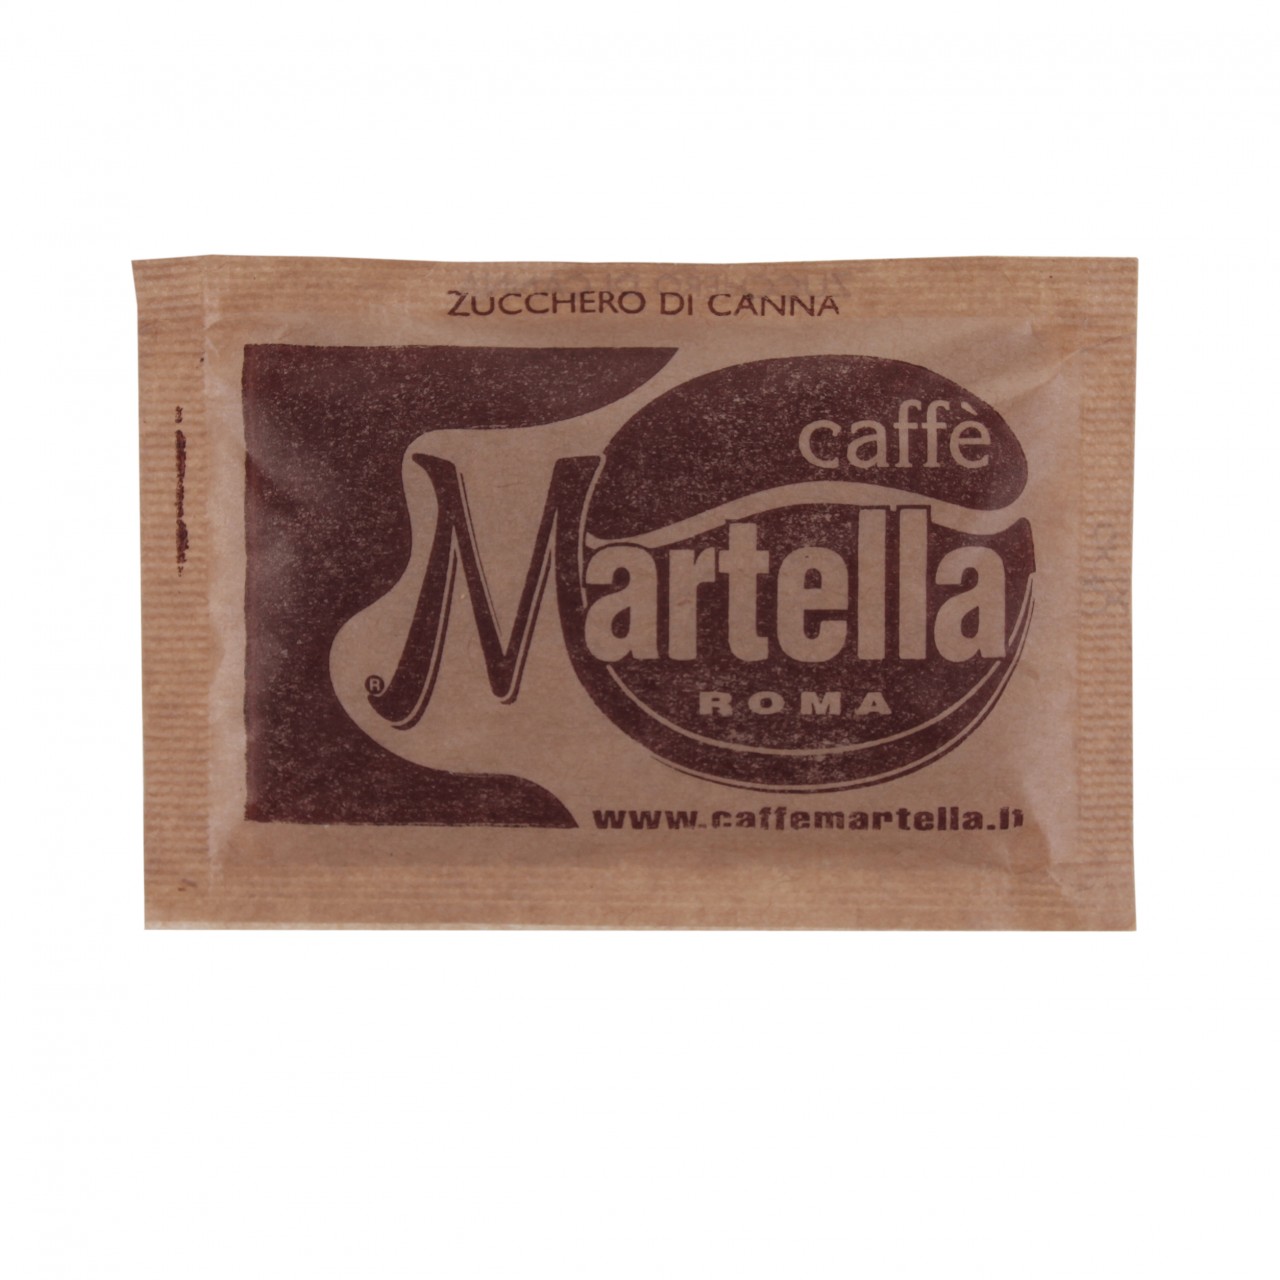 Martella Bauner Sugar